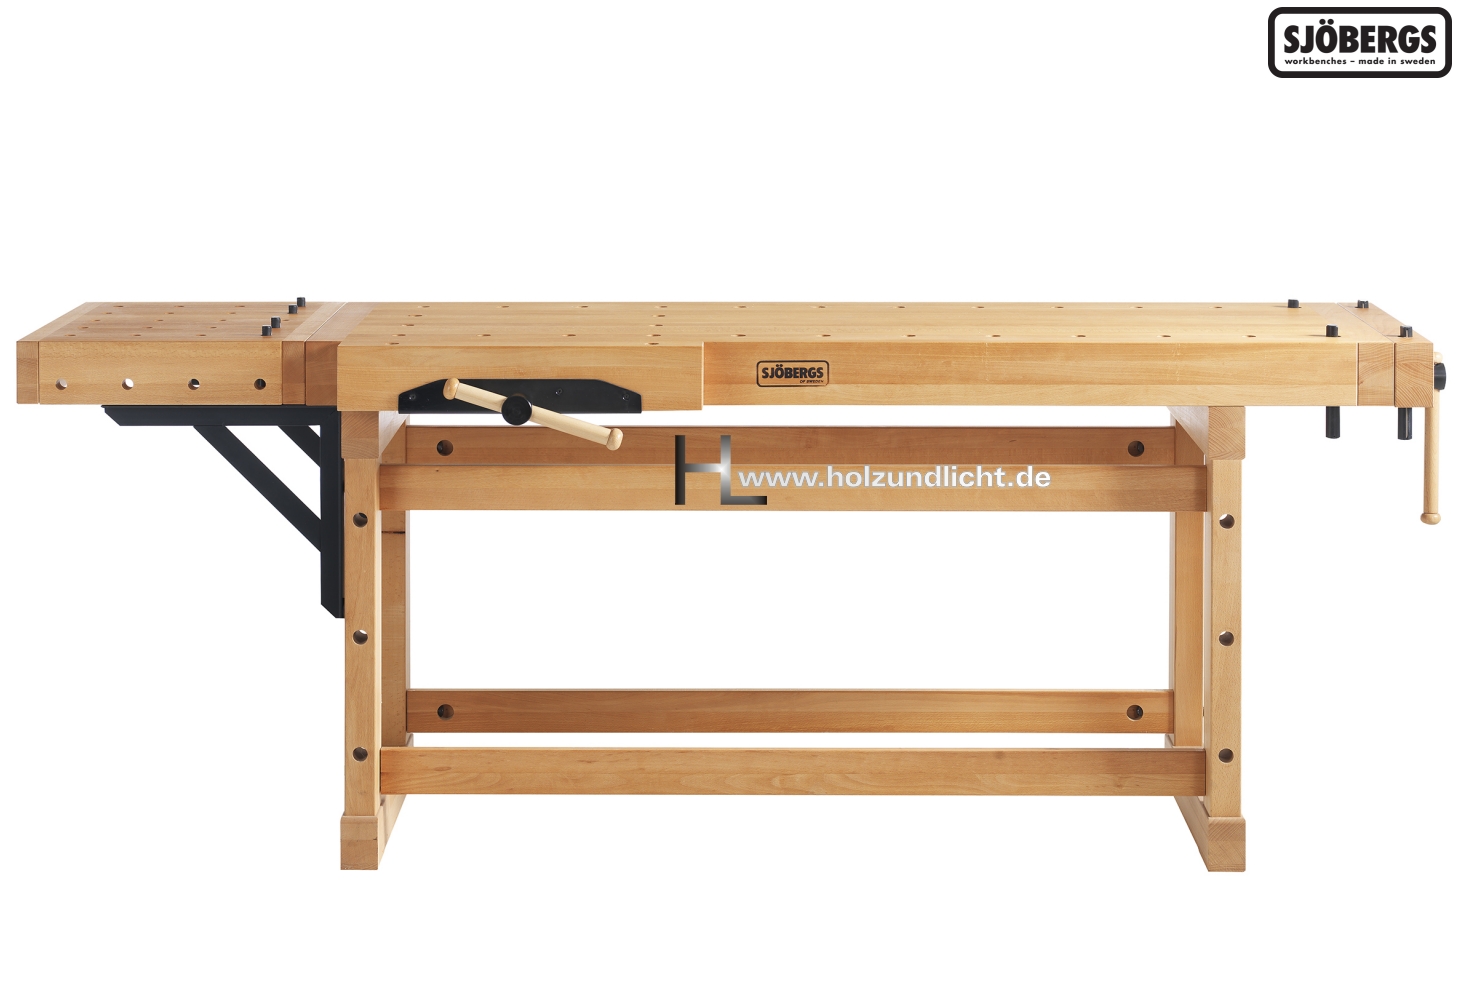 und CP Maschinen, 2000 Sjöbergs Lichtwaren Werkzeug, Onlineshop für ELITE - Hobelbank + Holz-